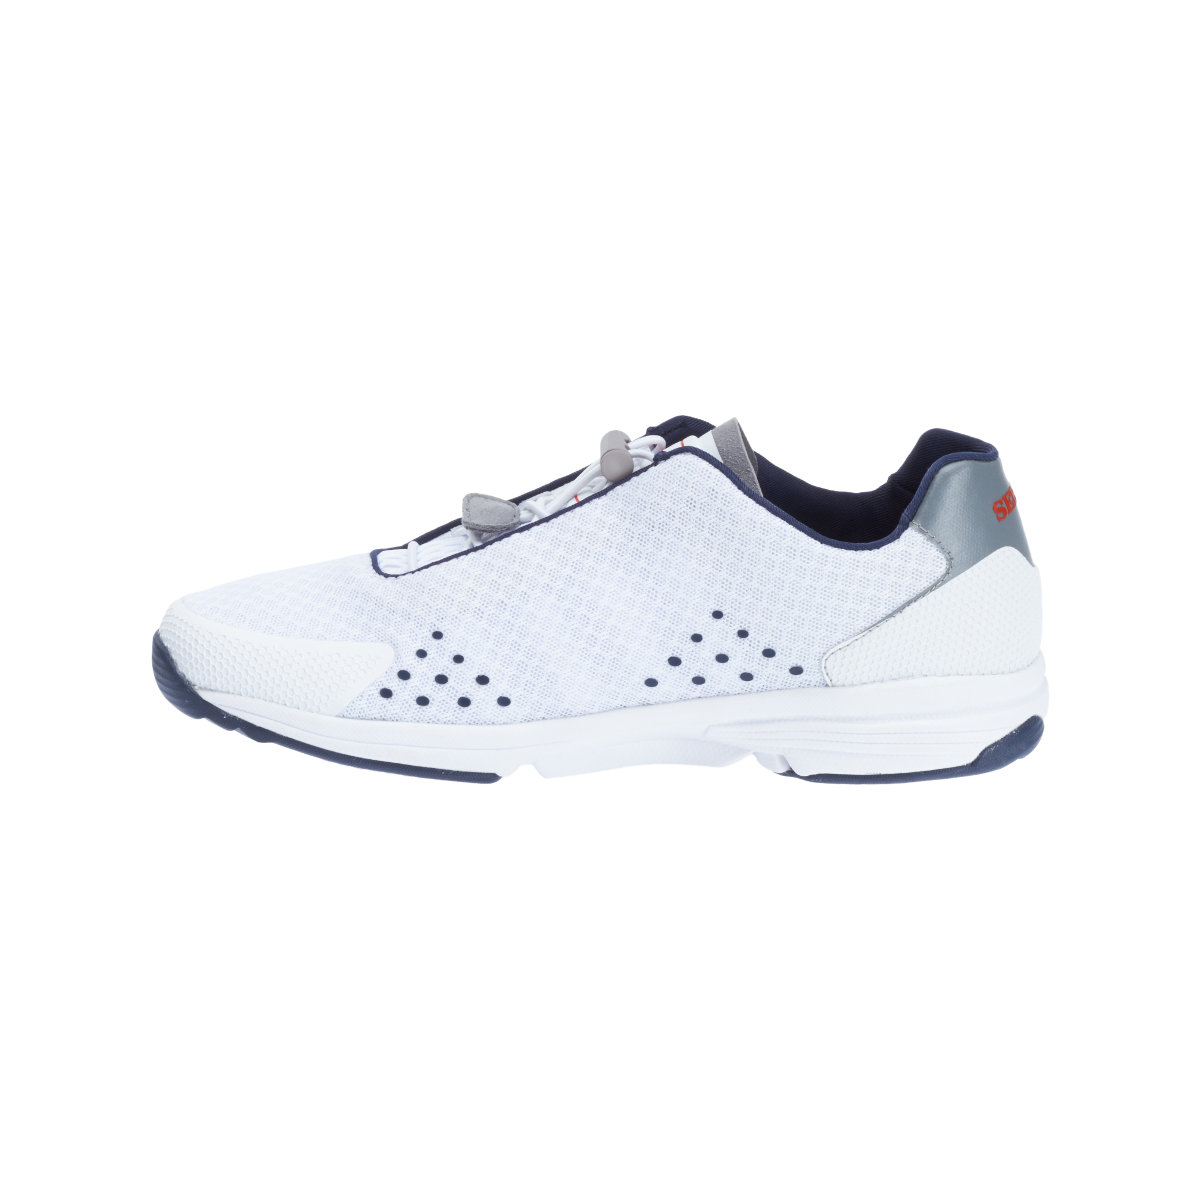 Sebago Cyphon Sea Sport chaussures à voile femme blanche, taille EU 40 (US 9)